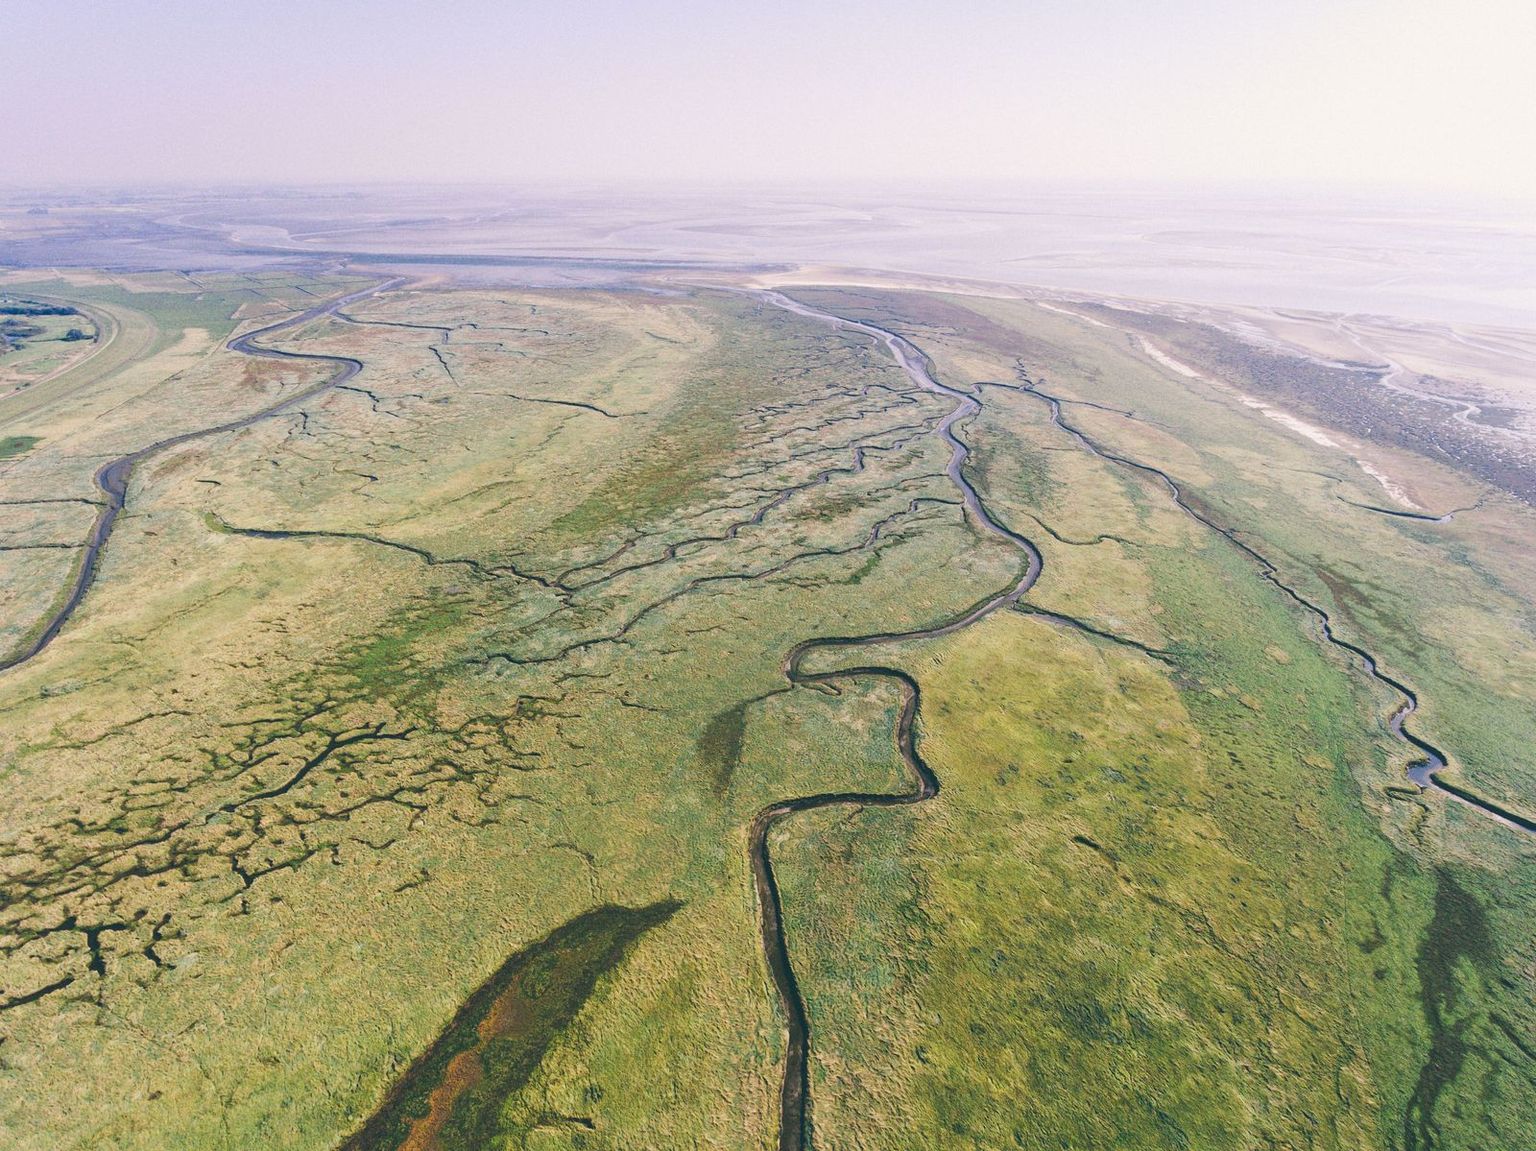 Drohnenaufnahme von der außergewöhnlichen Landschaft des Nordens mit der Nordsee, grünen Wiesen, Wattlandschaft und Flüssen